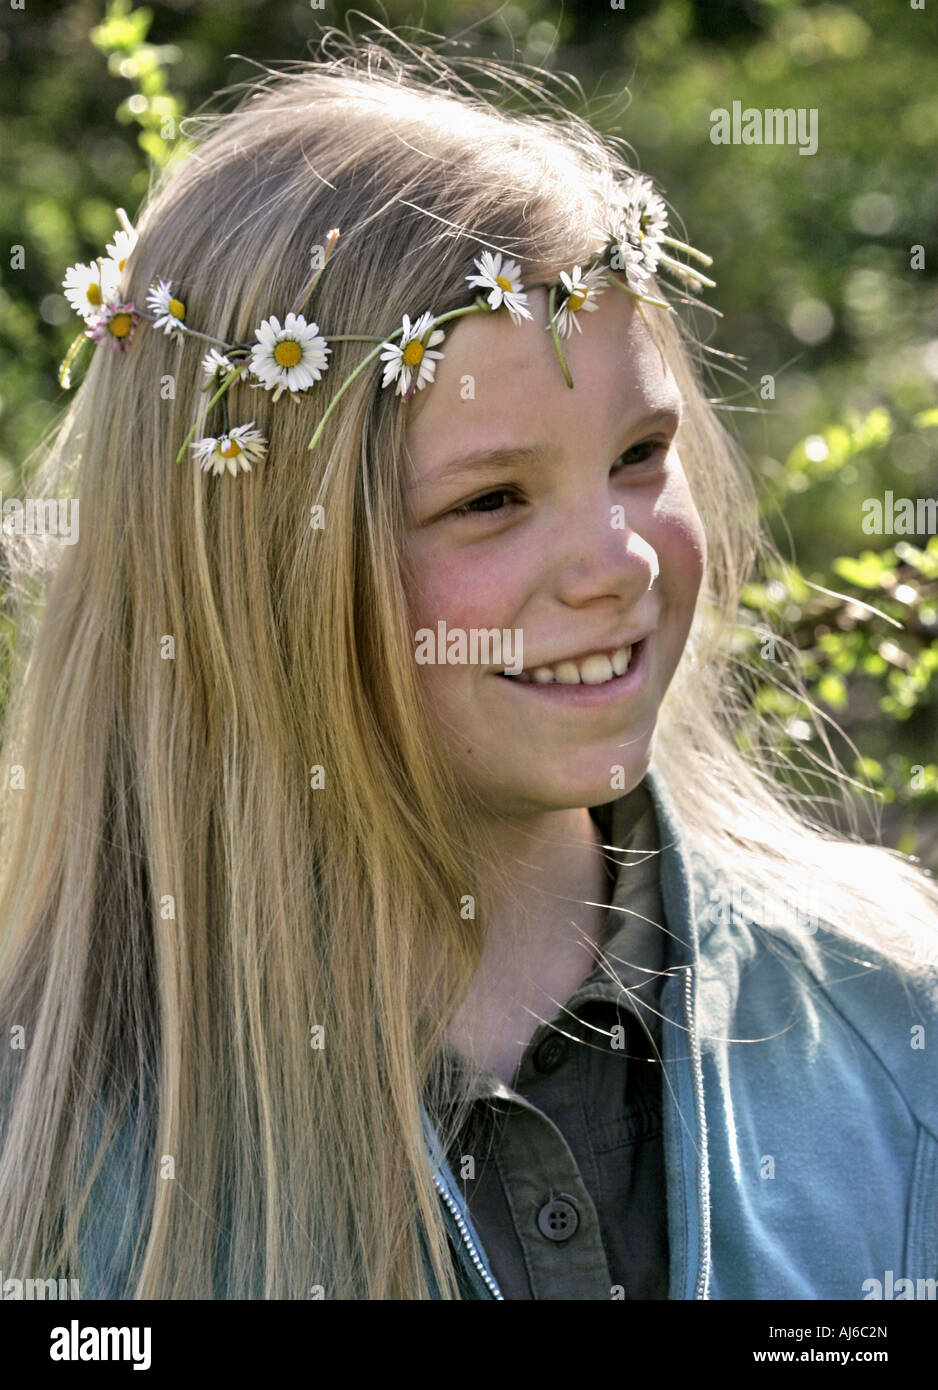 Marguerite commune, pelouse, Daisy Daisy (Anglais) Bellis perennis, jeune fille avec un bouquet de fleurs sur la tête Banque D'Images